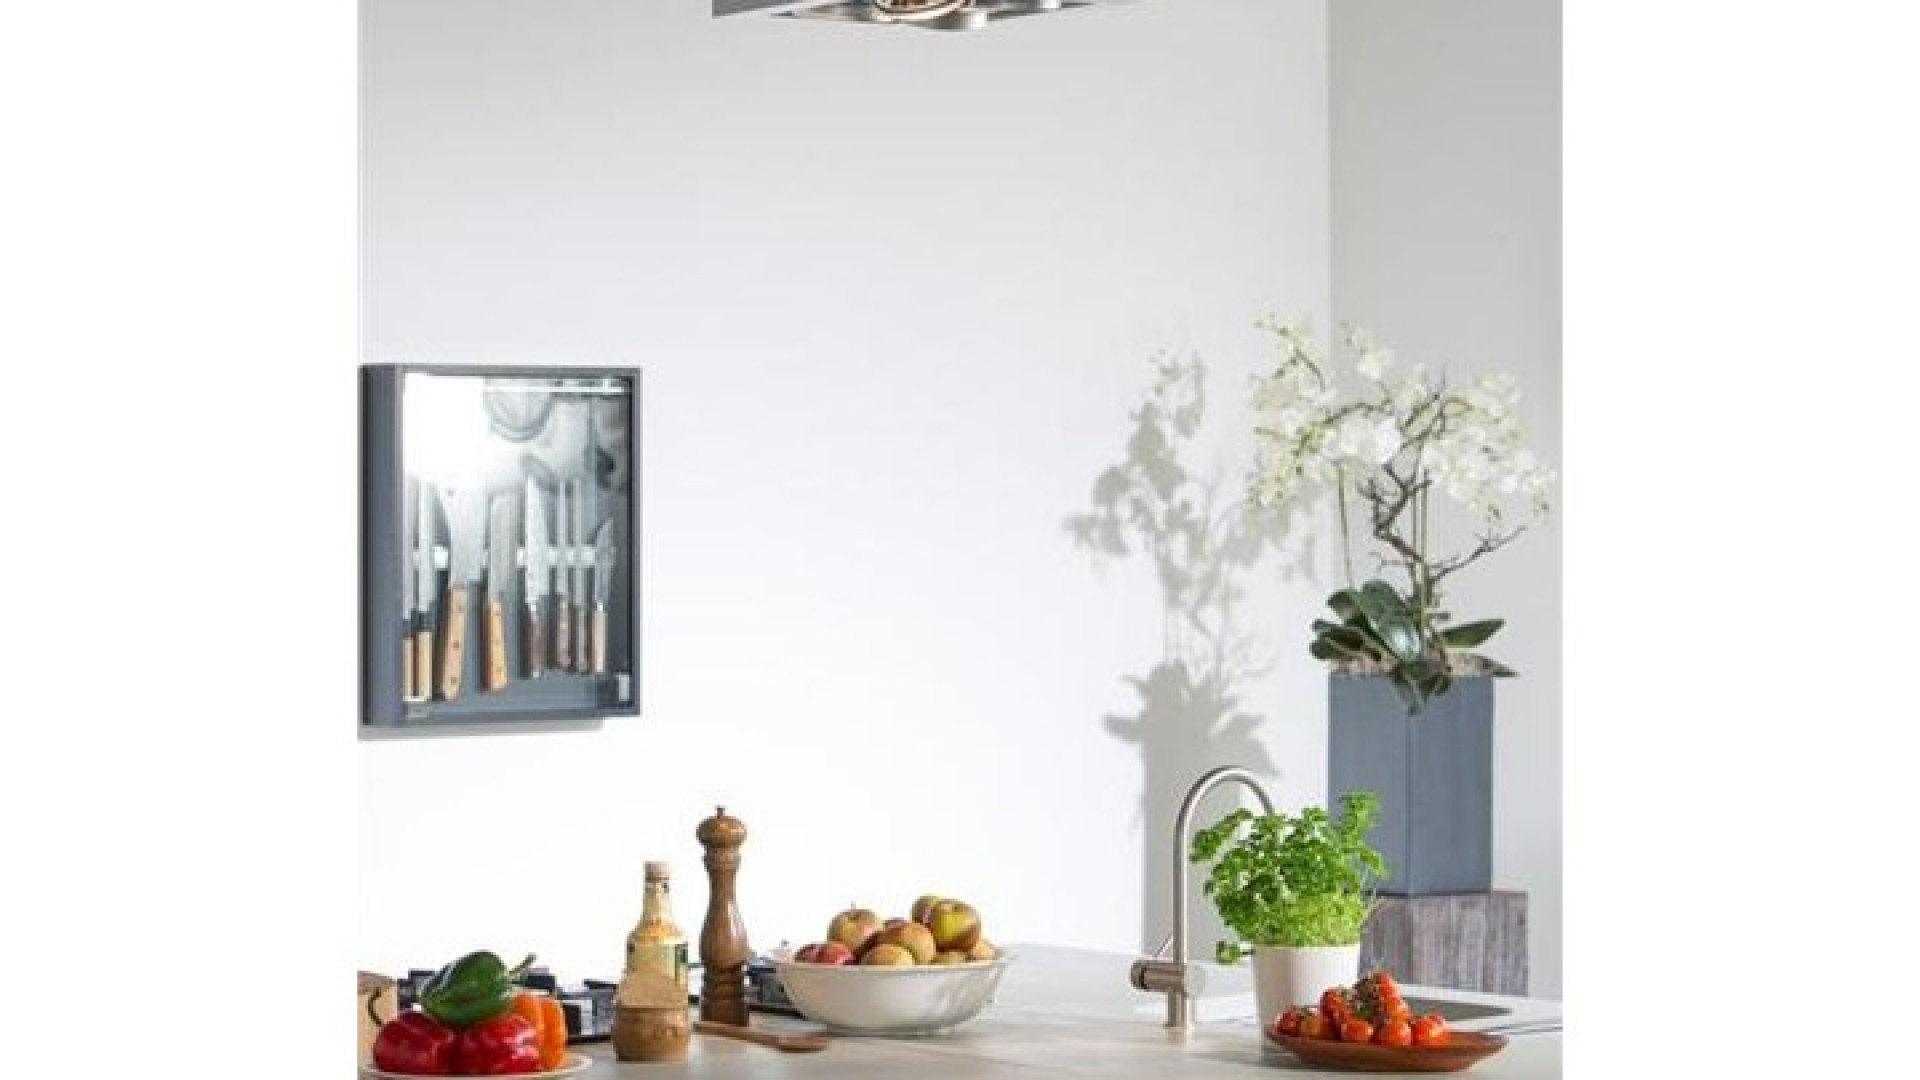 Tv kok Rudolph van Veen verkoopt zijn huis inclusief topkeuken. Zie foto's 7